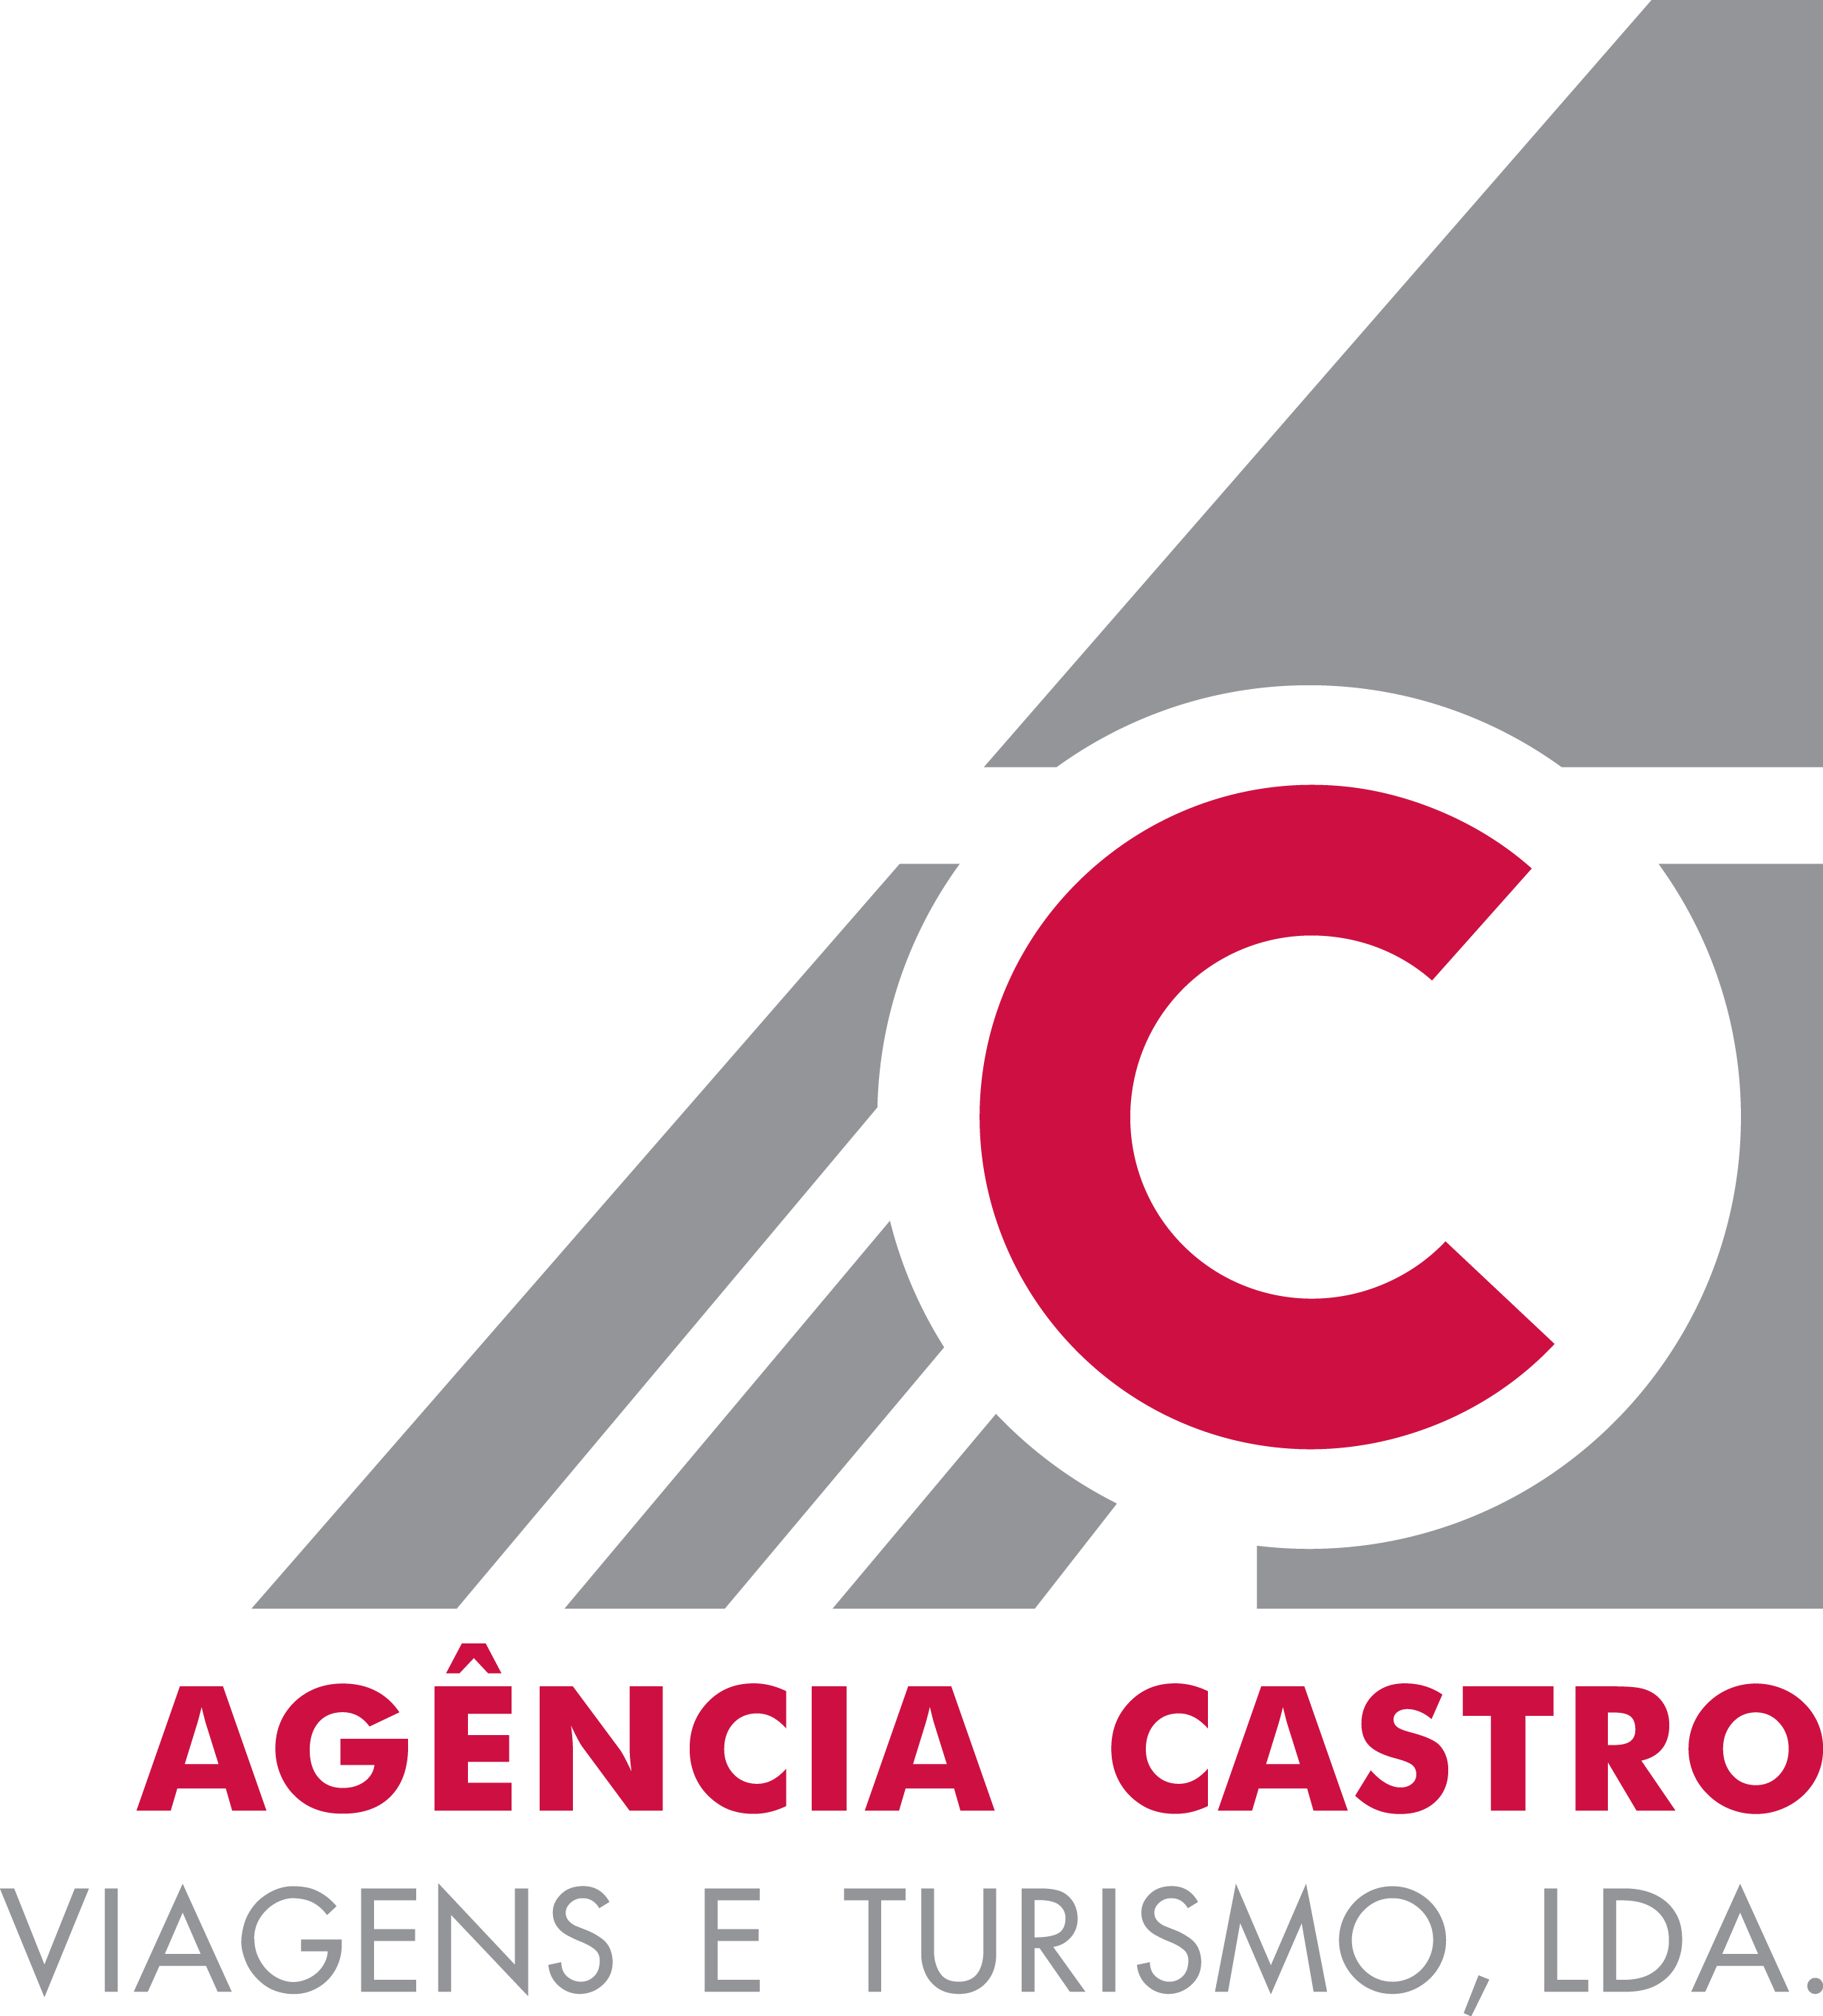 Agncia Castro - Viagens e Turismo